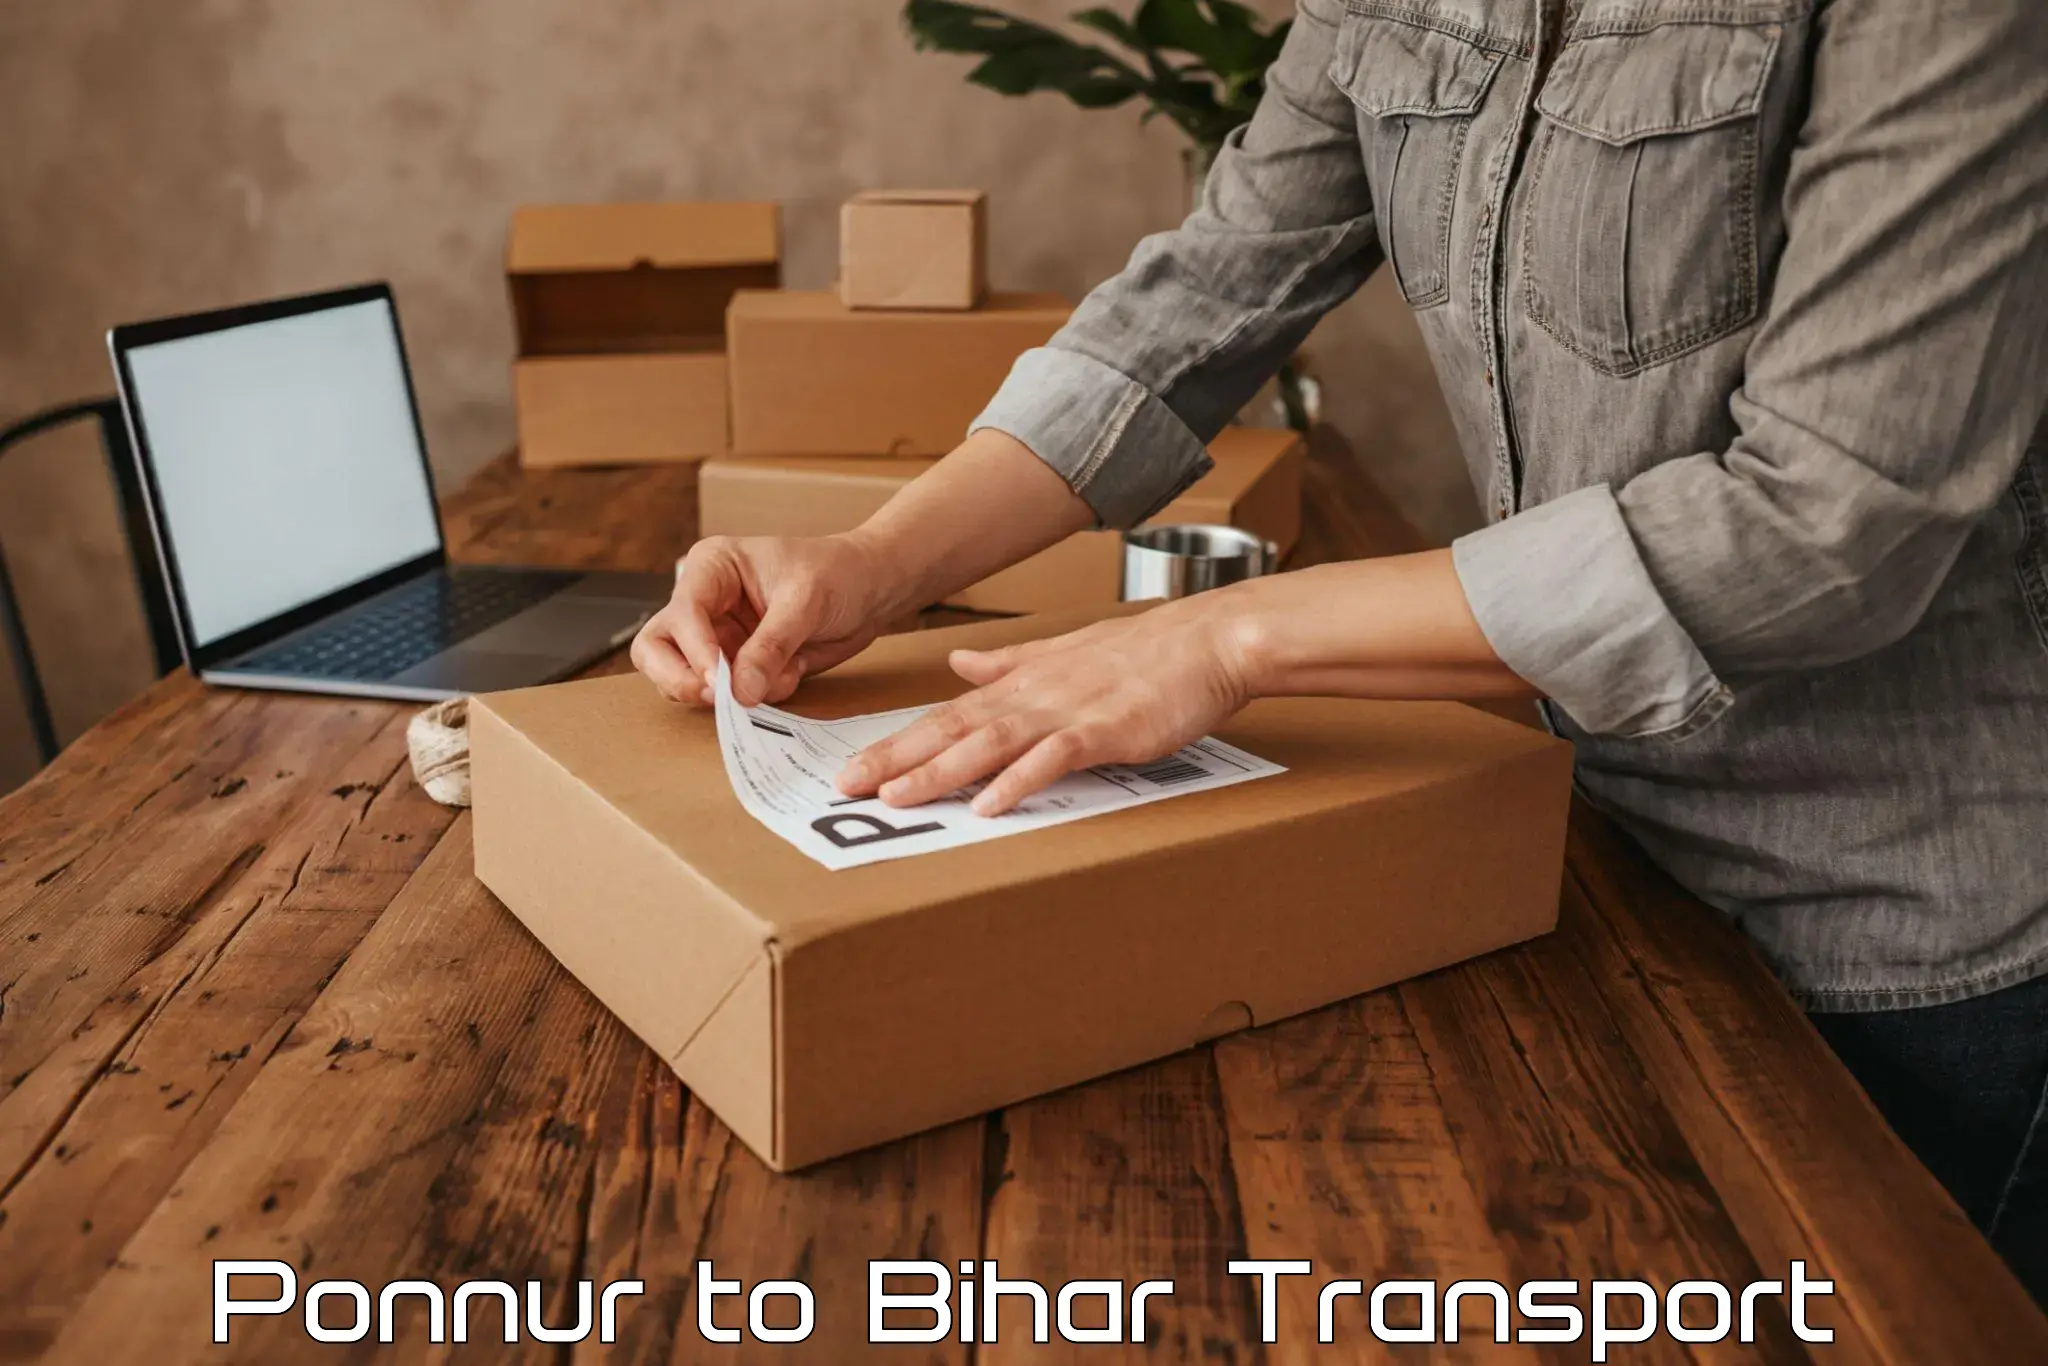 Transport in sharing Ponnur to Dehri